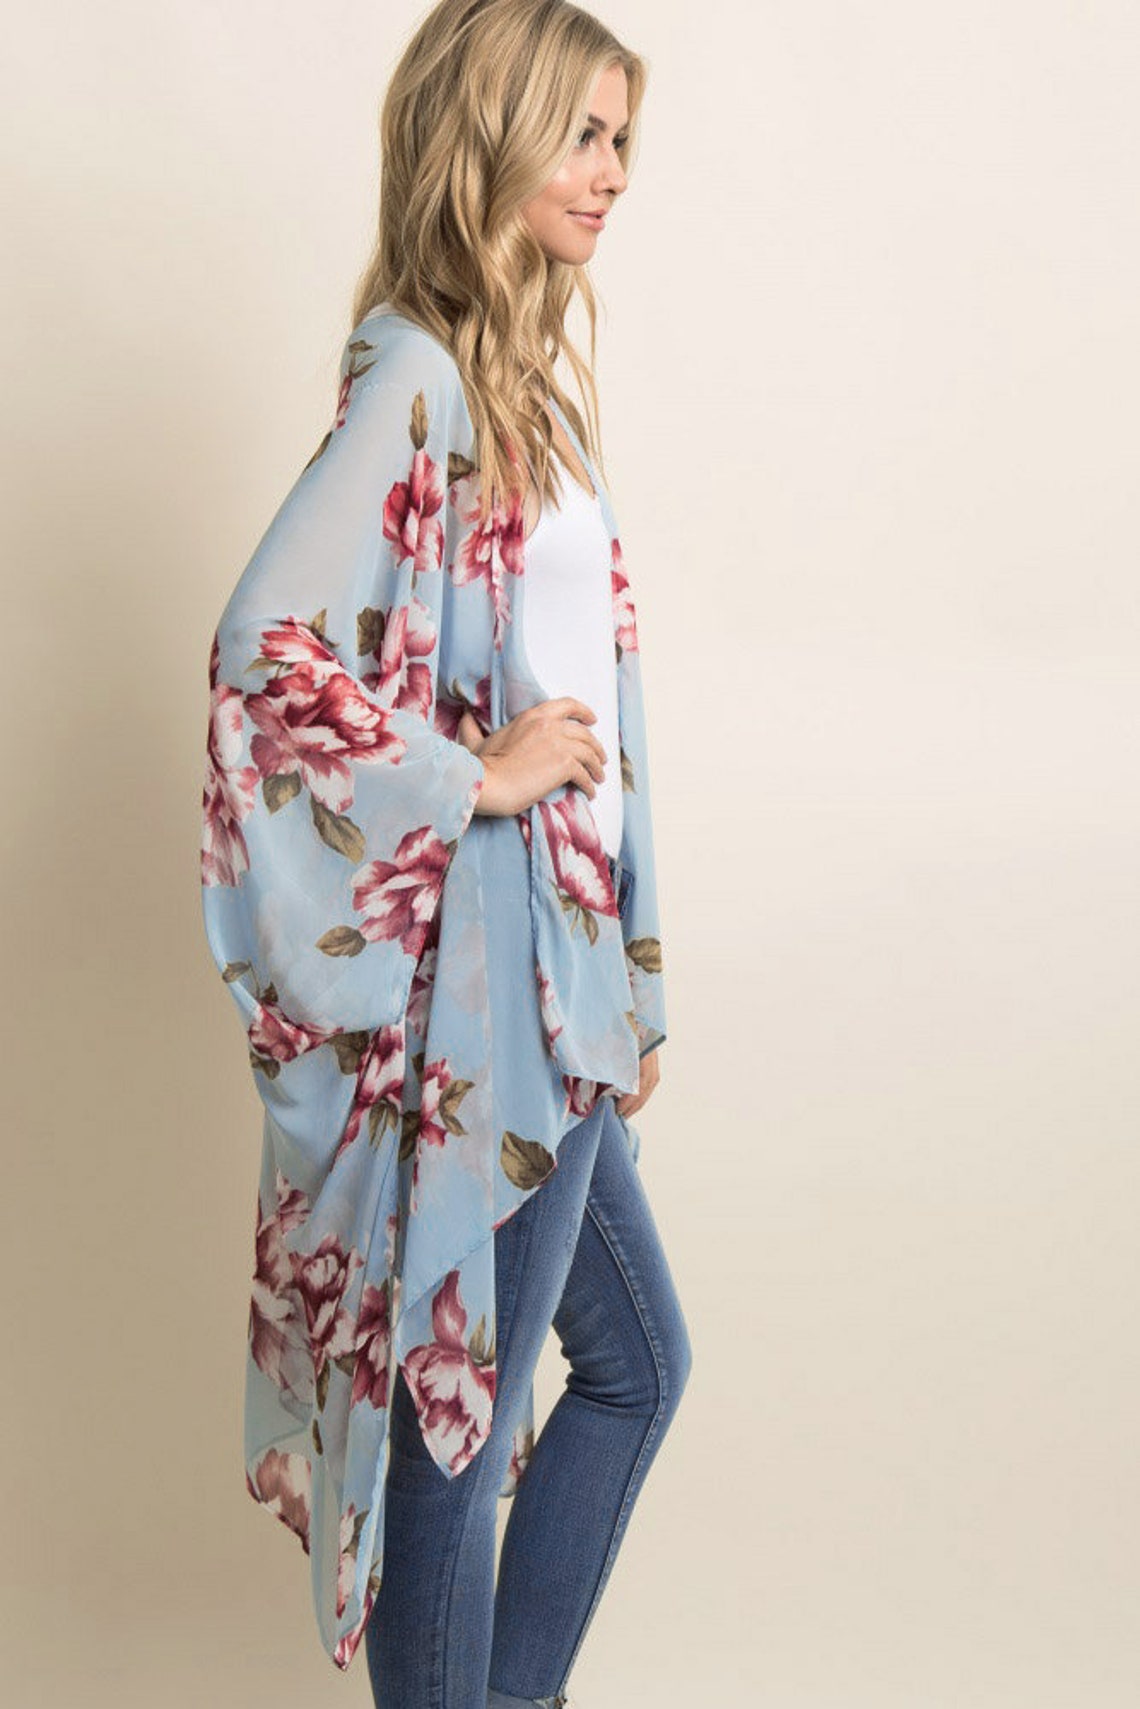 Womens Print Sheer Flowy Summer Chiffon Loose Casual Kimono | Etsy